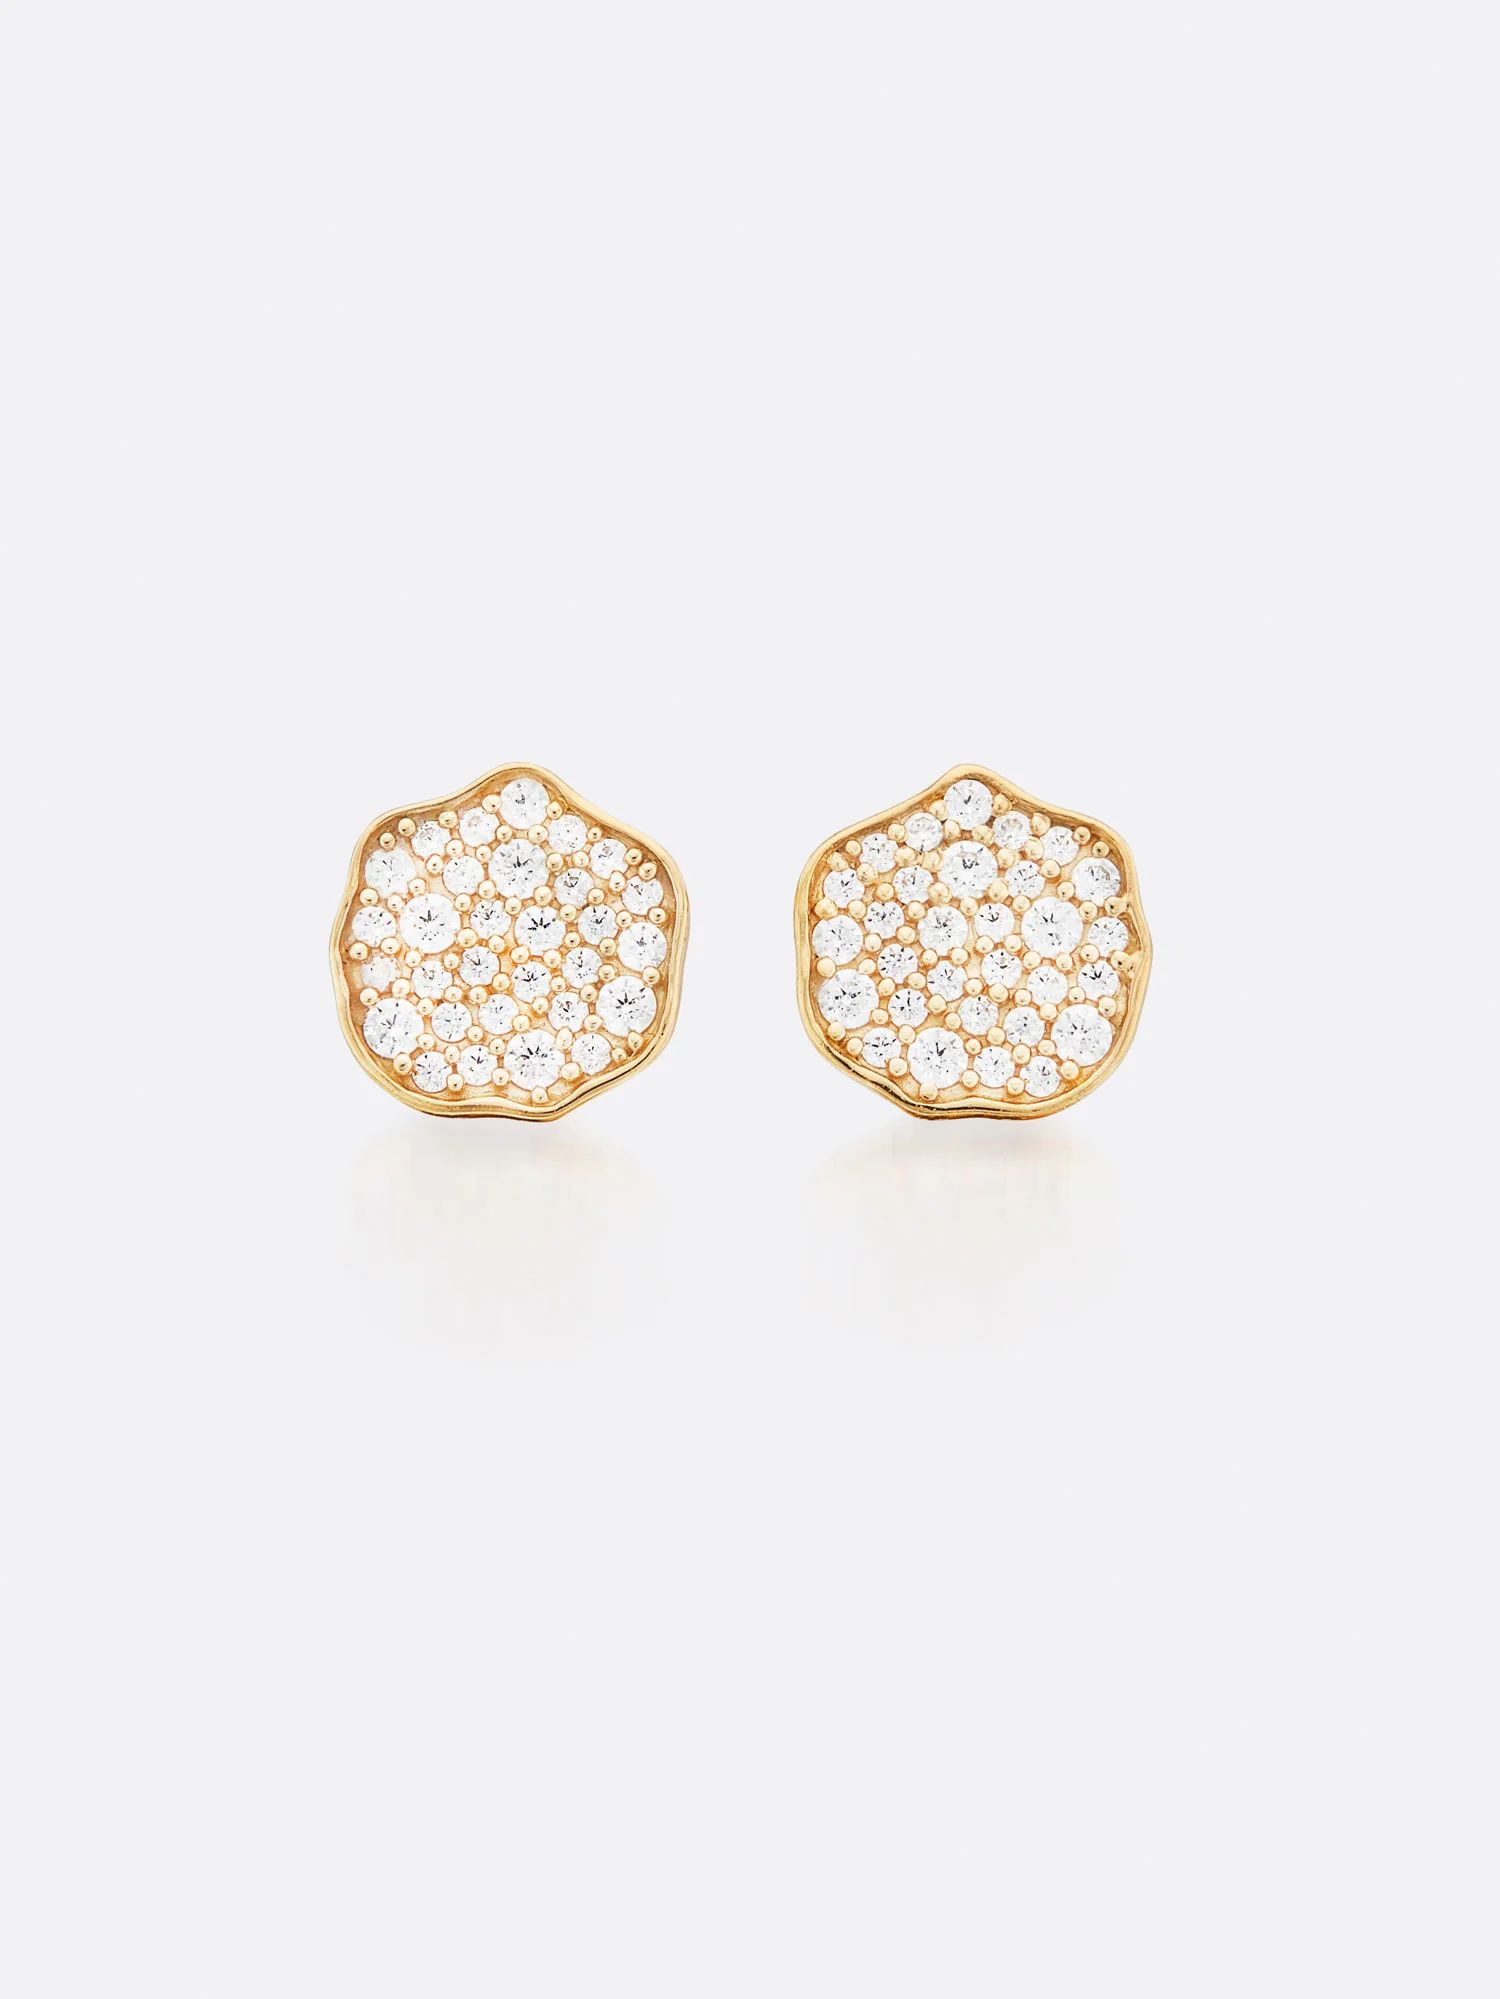 Brochu Walker | Women's Fine Jewelry Petite Fleur Pavé Diamond Mini Stud Earrings | Brochu Walker